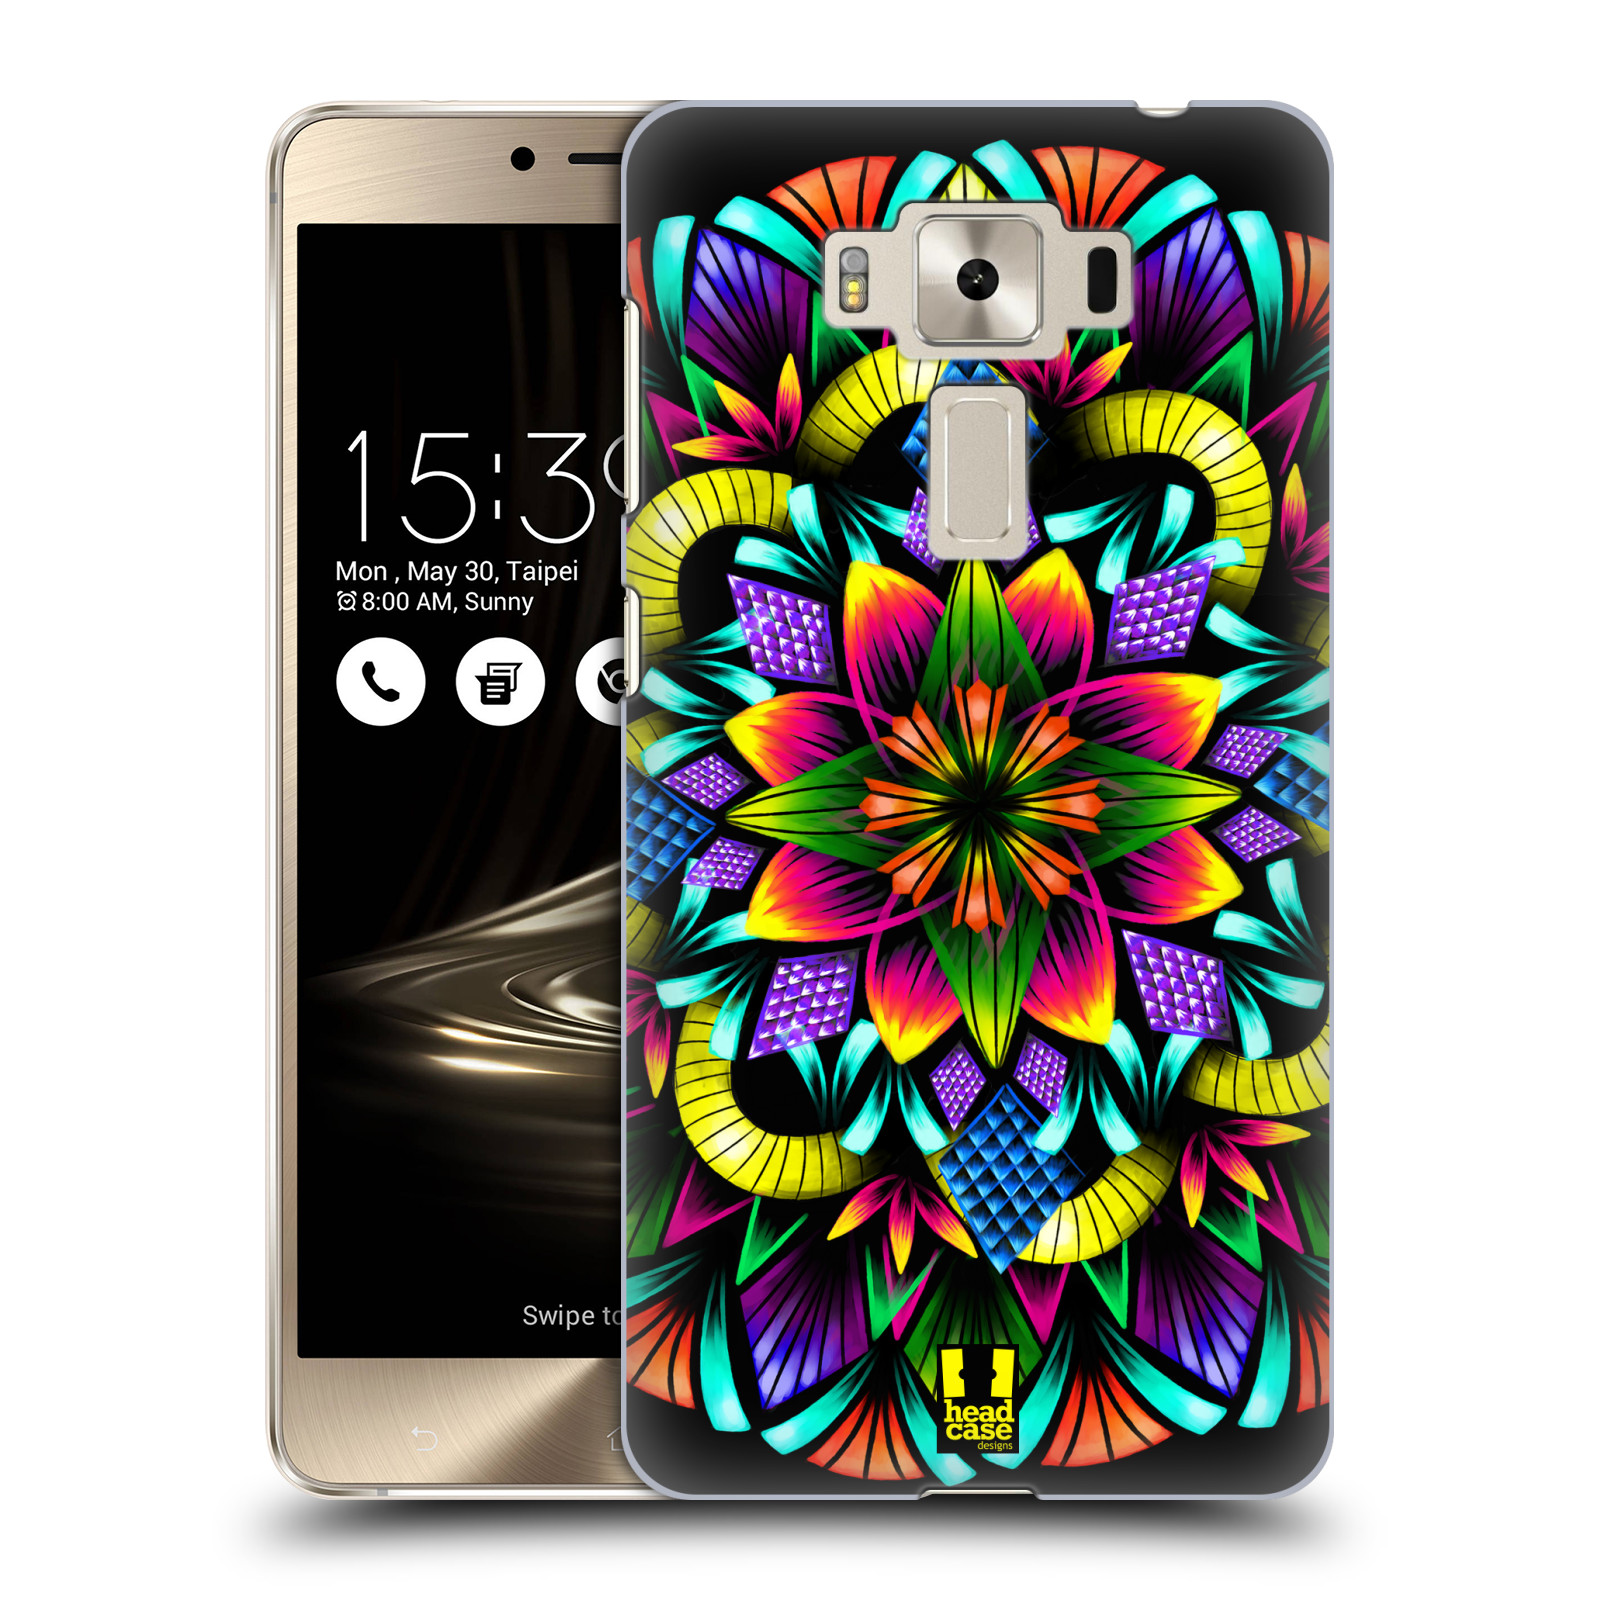 HEAD CASE plastový obal na mobil Asus Zenfone 3 DELUXE ZS550KL vzor Indie Mandala kaleidoskop barevný vzor KVĚTINA